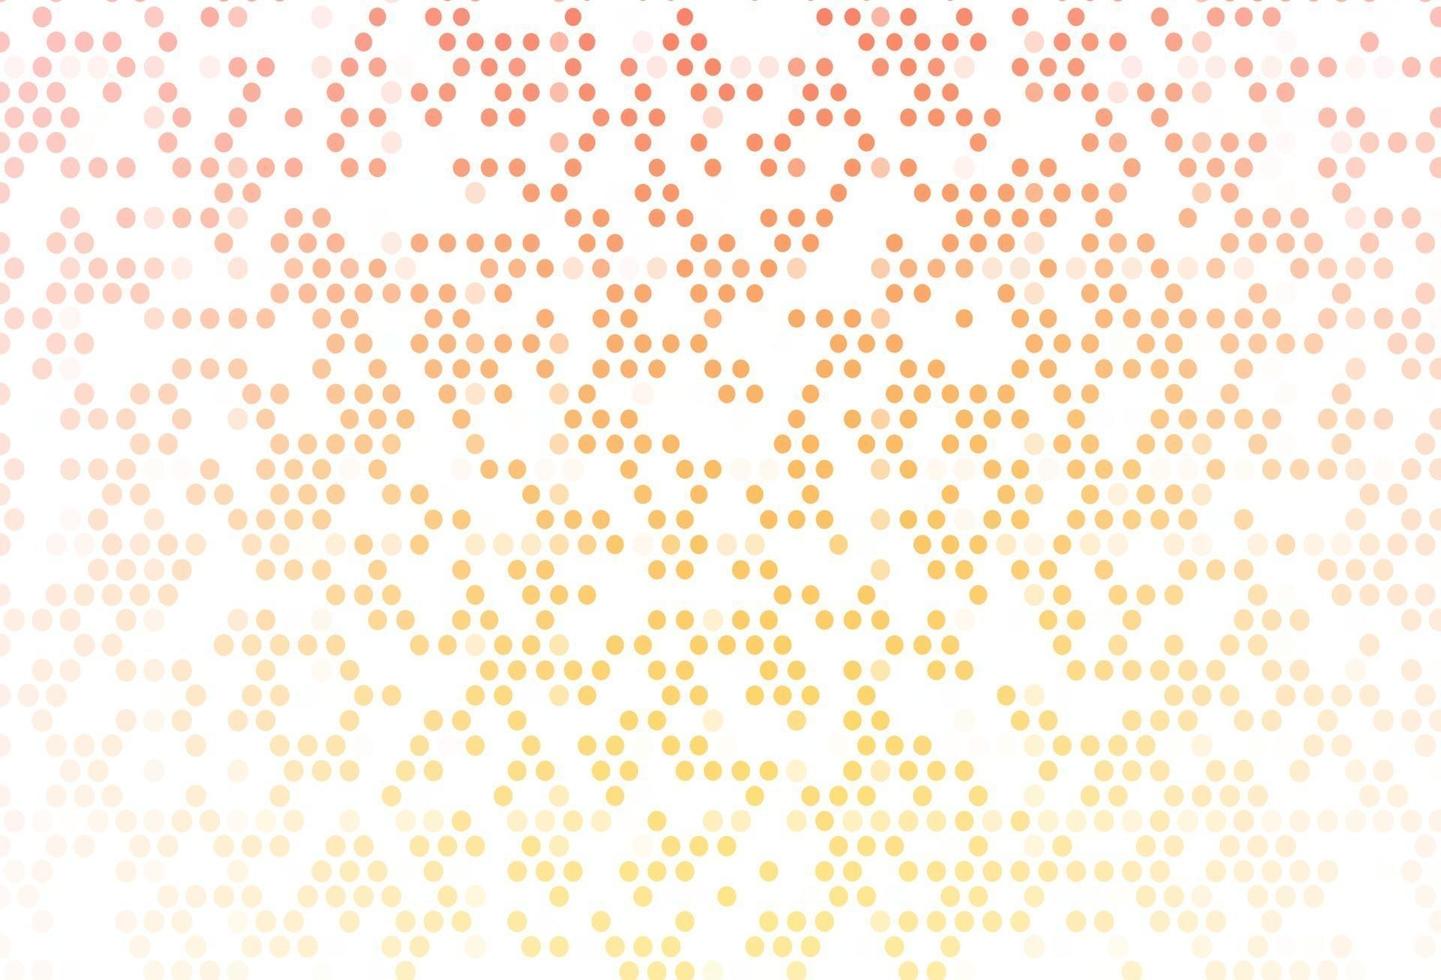 motif vectoriel jaune clair et orange avec des sphères.